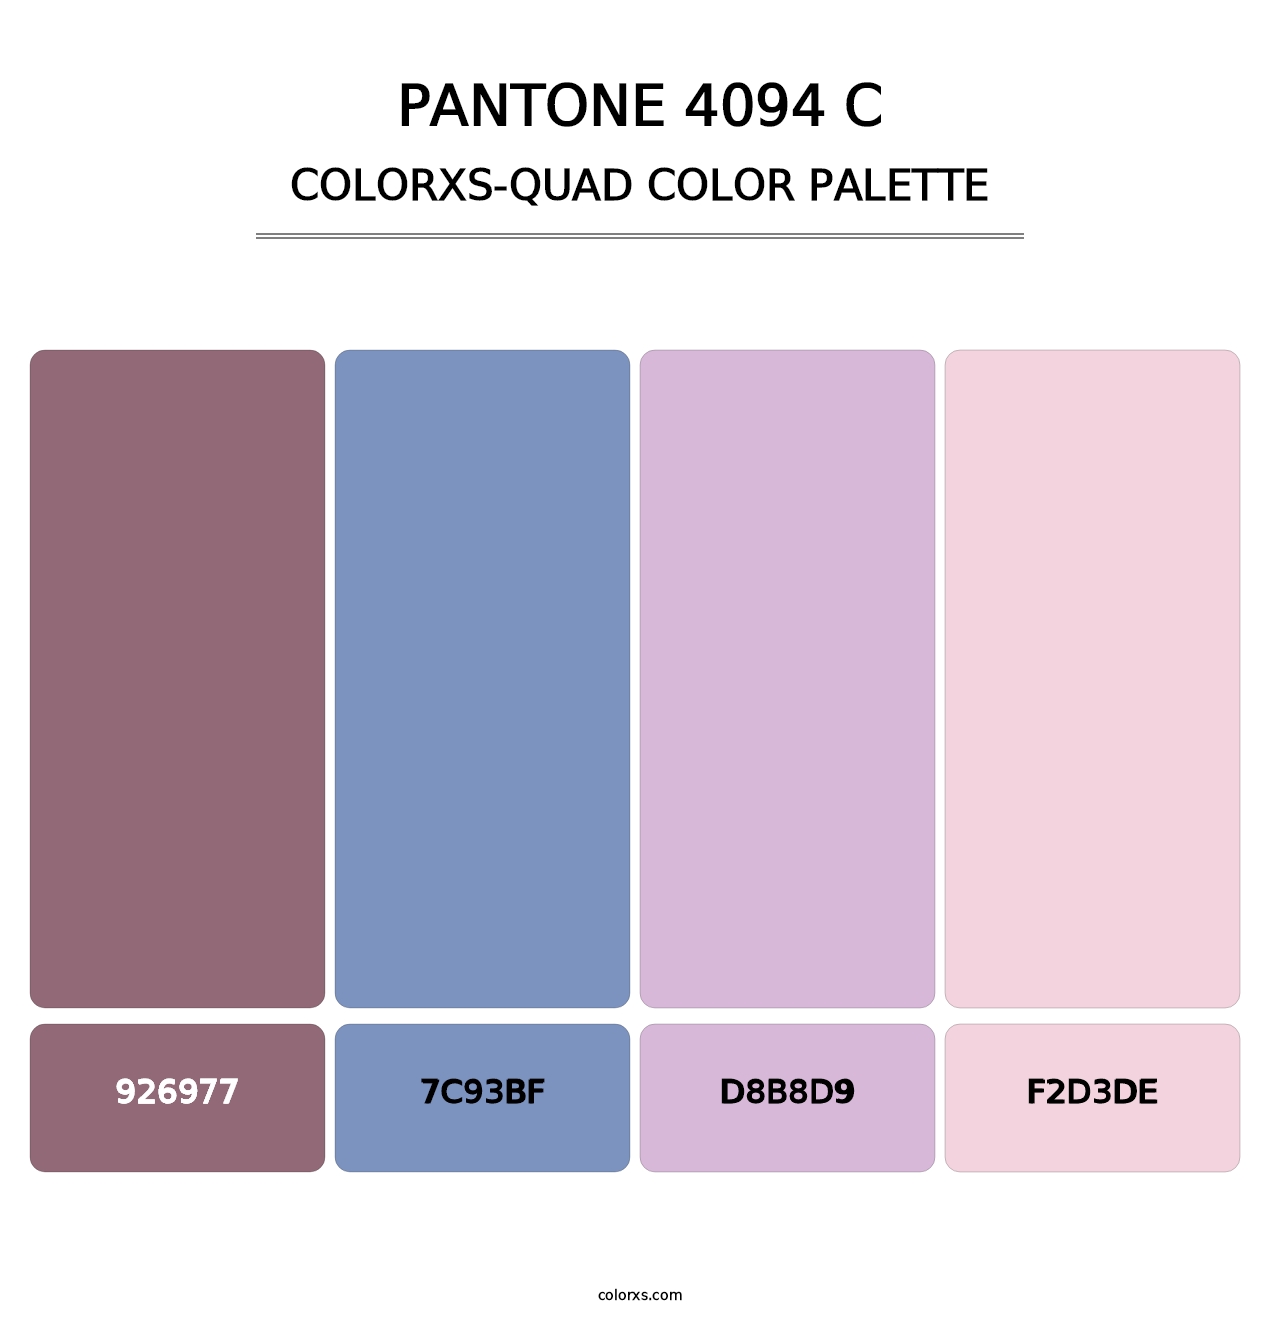 PANTONE 4094 C - Colorxs Quad Palette